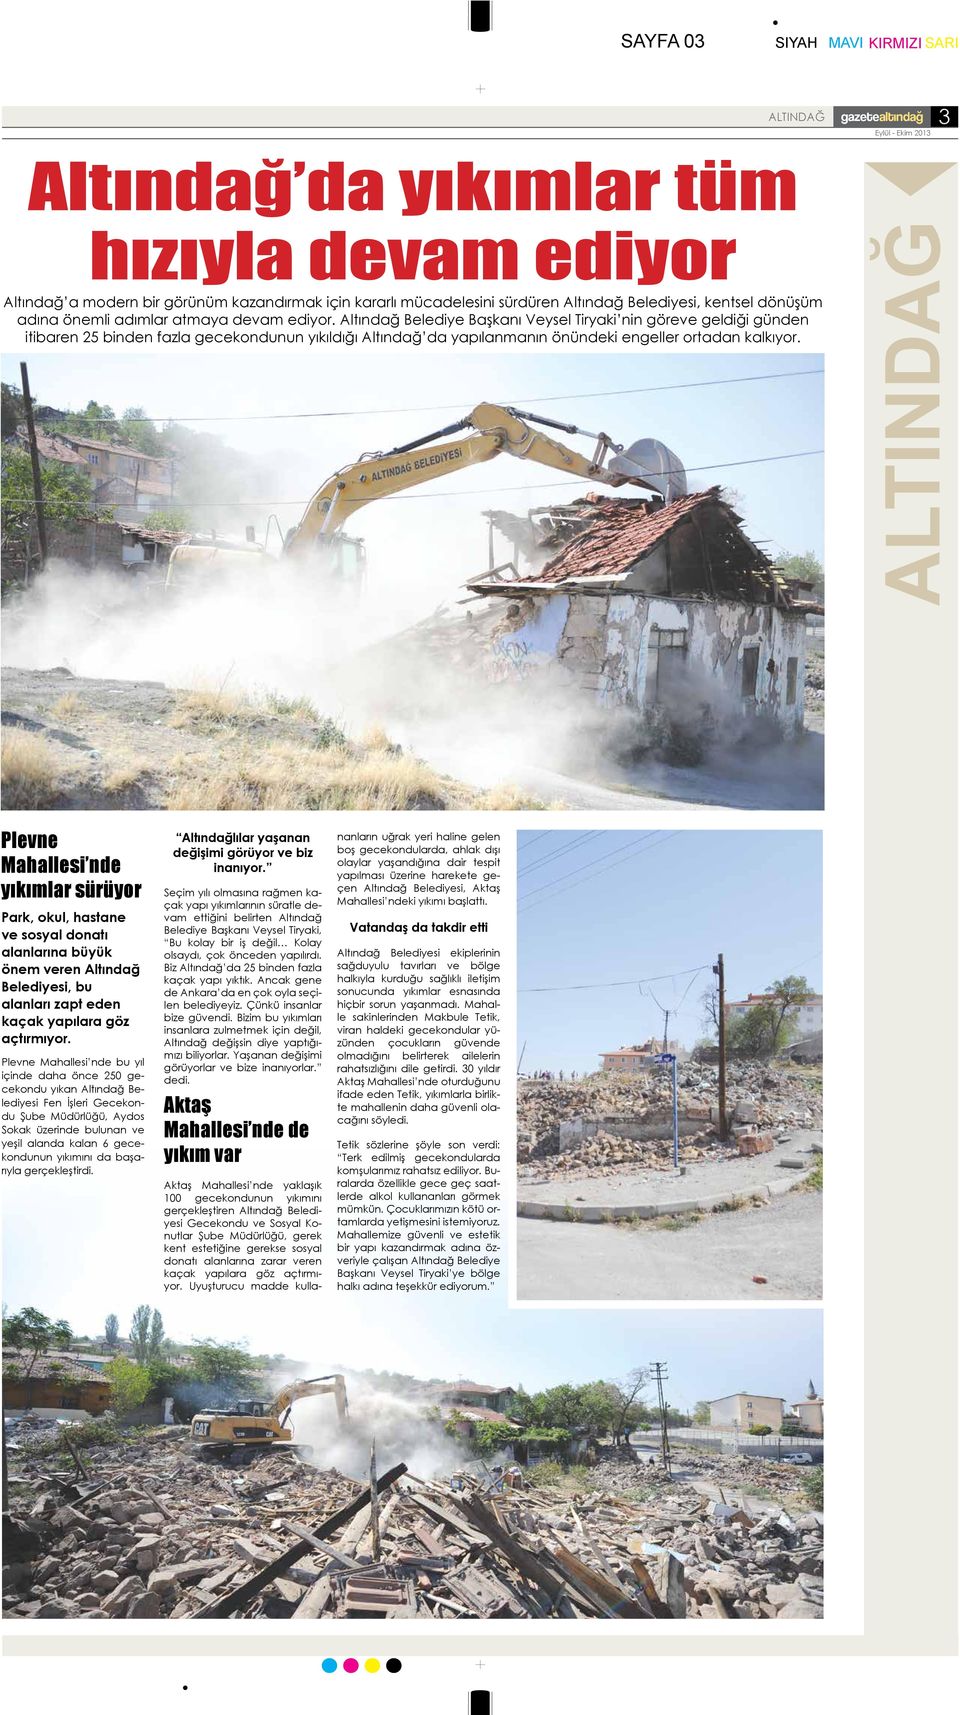 Altındağ Belediye Başkanı Veysel Tiryaki nin göreve geldiği günden itibaren 25 binden fazla gecekondunun yıkıldığı Altındağ da yapılanmanın önündeki engeller ortadan kalkıyor.